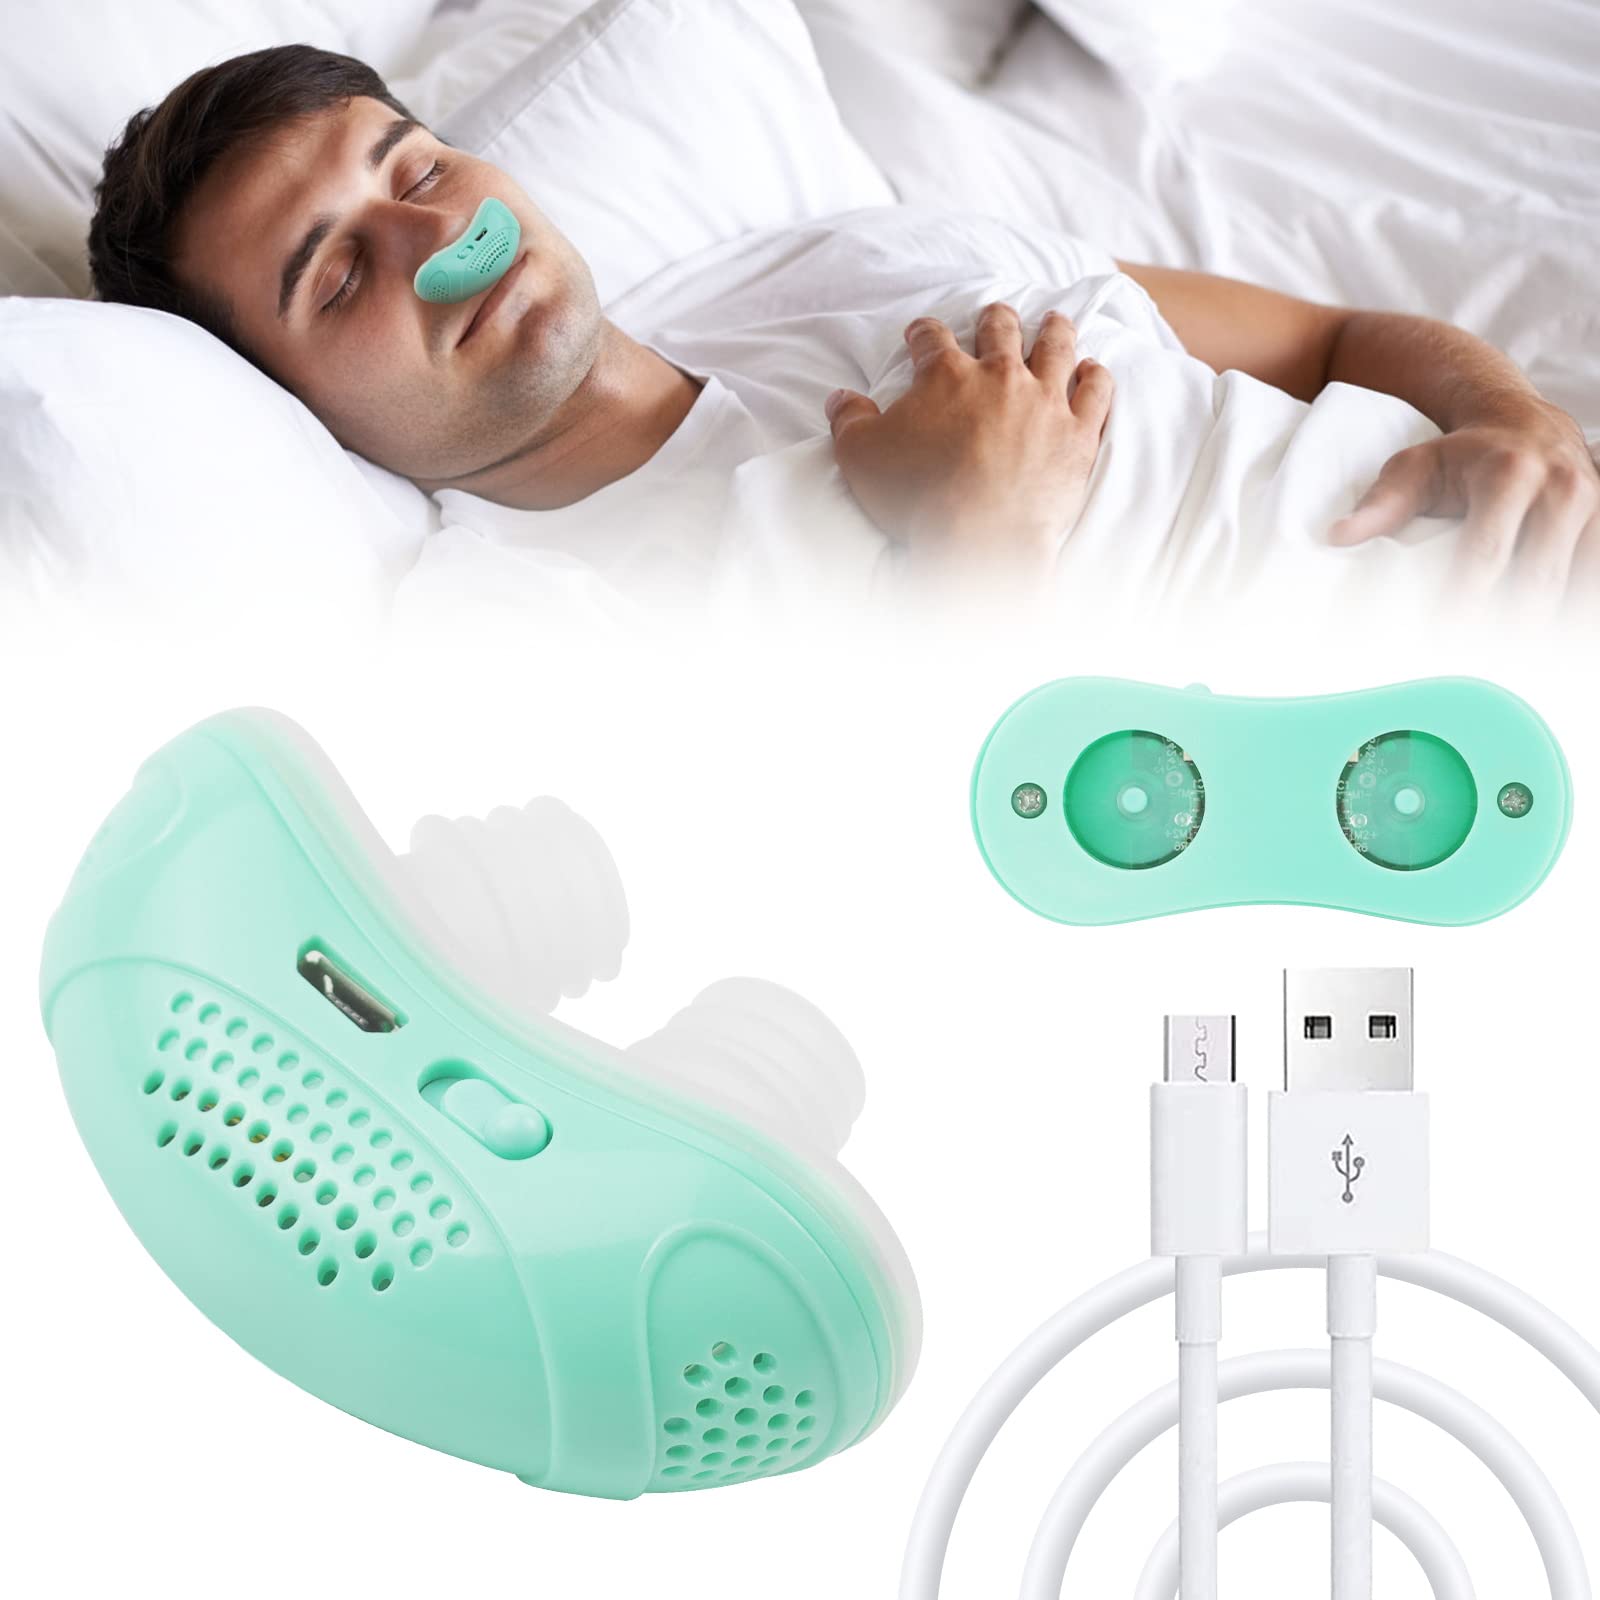 Airing: The world's first micro- CPAP for sleep apnea 